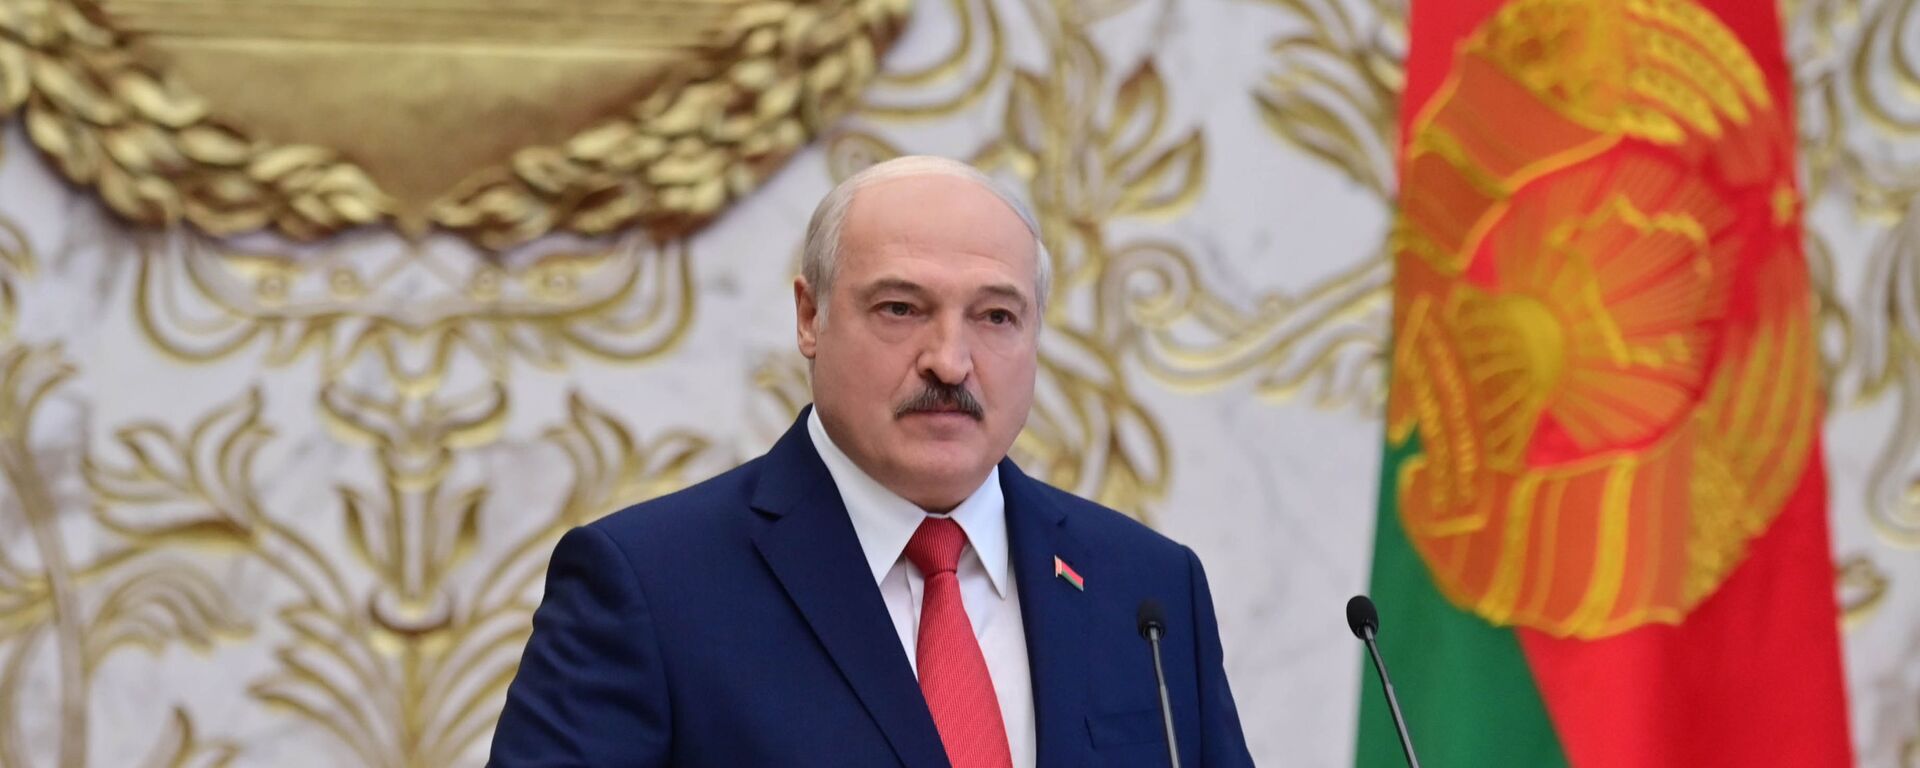 La investidura de Alexandr Lukashenko en Bielorrusia - Sputnik Mundo, 1920, 24.05.2021